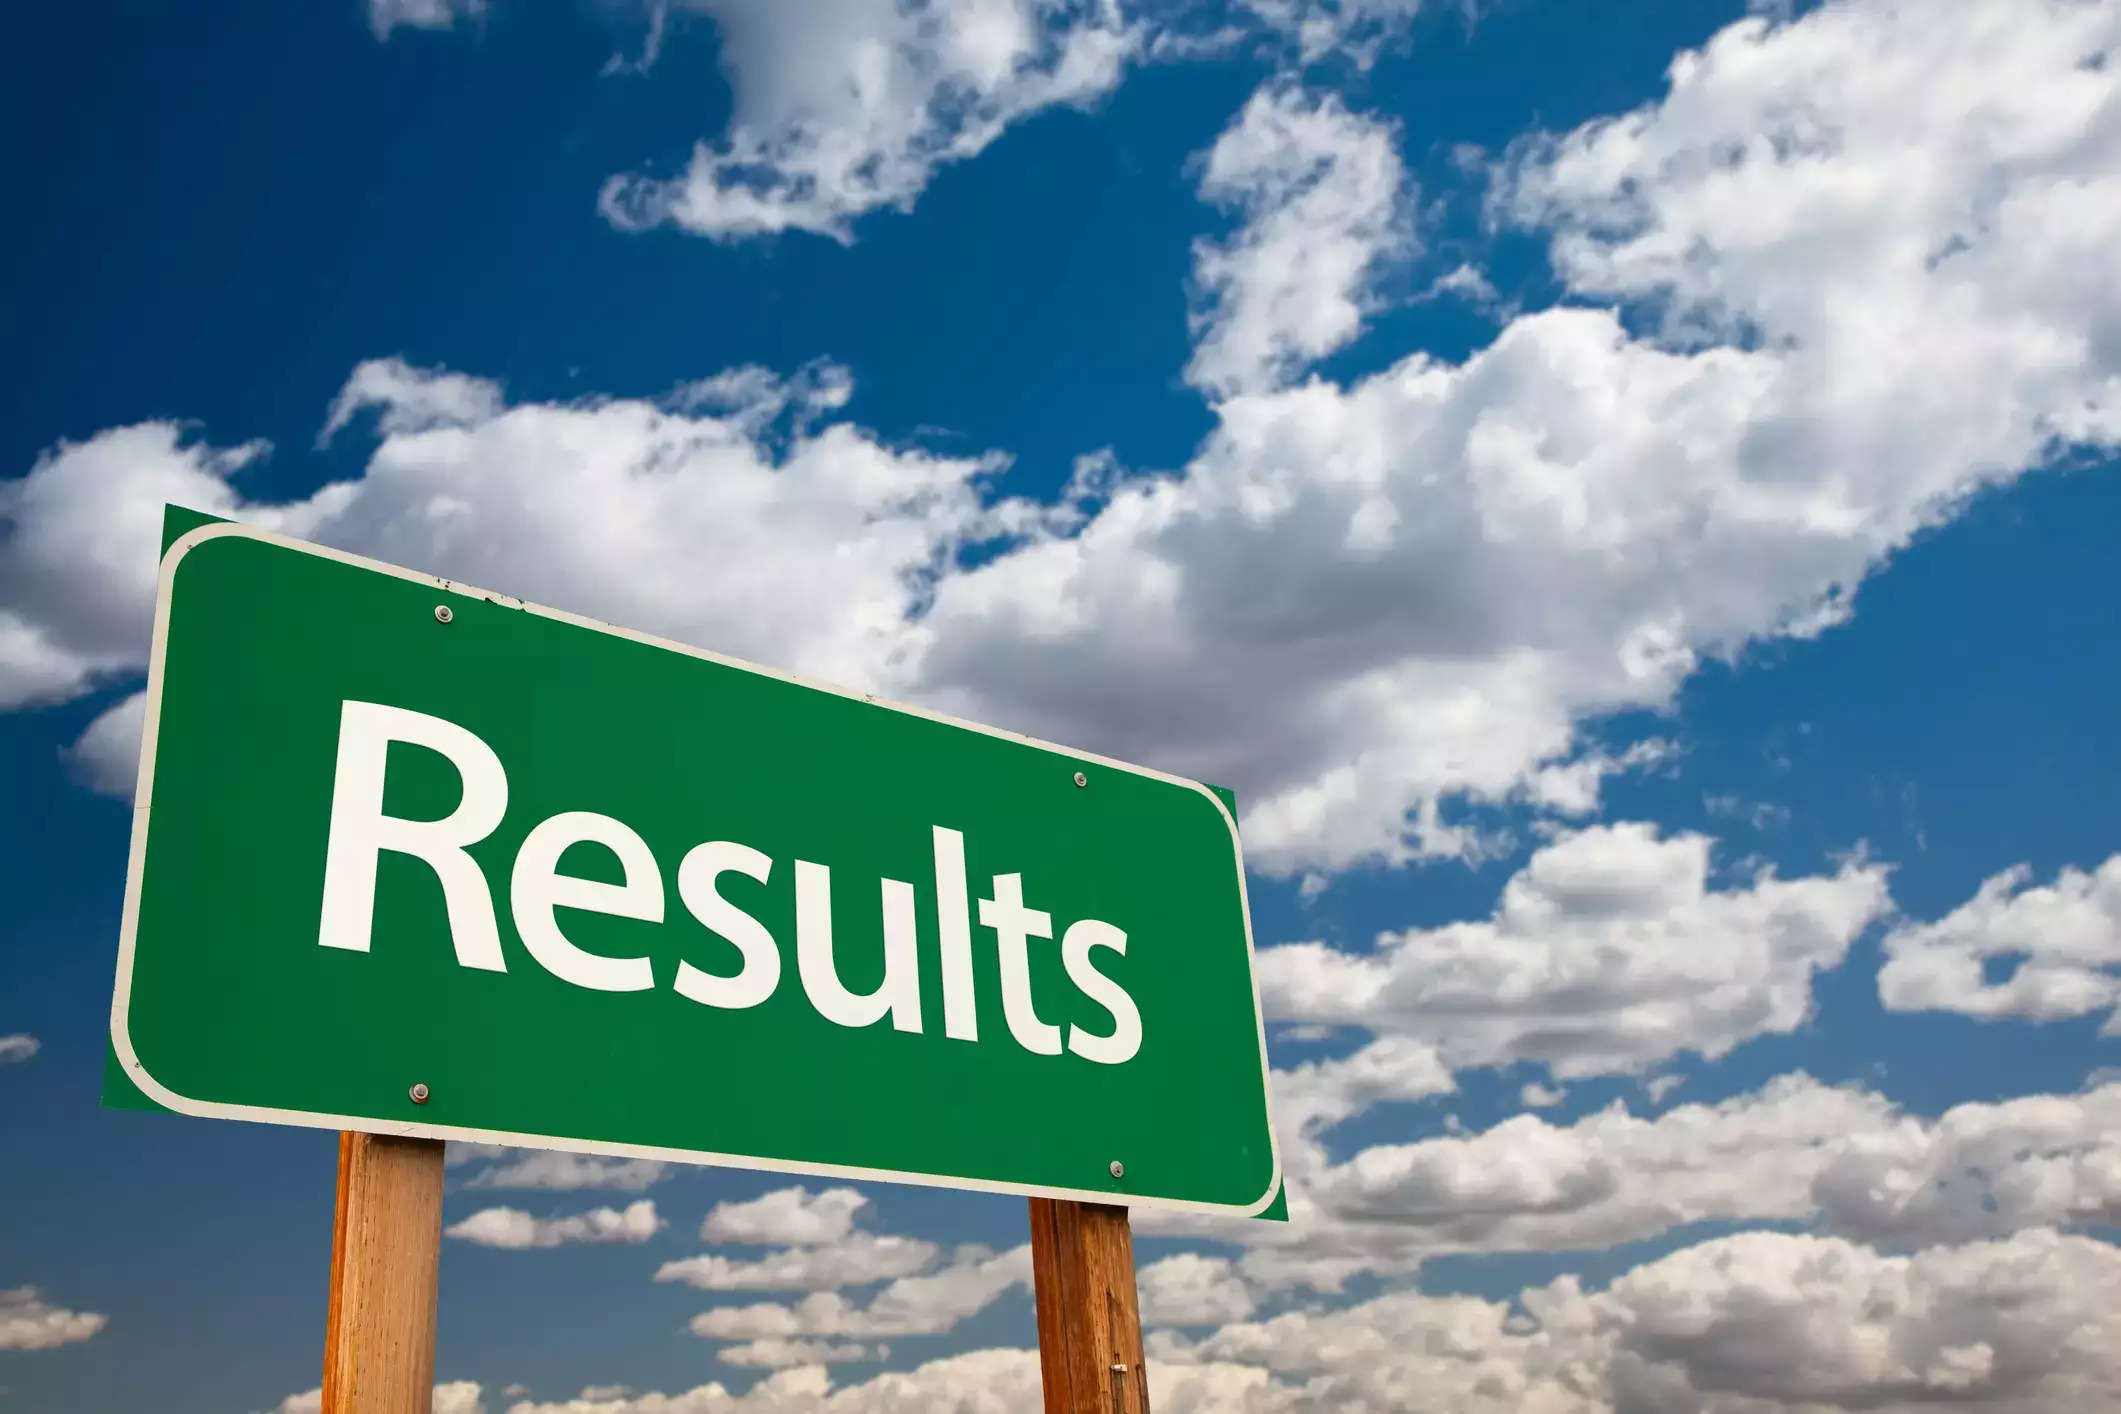 ESIC Result 2023 Declared: कर्मचारी राज्य बीमा निगम चिकित्सा, जयपुर ने विशेषज्ञ और वरिष्ठ रेजिडेंट परीक्षा का परिणाम (ESIC Jaipur Result 2023) घोषित कर दिया है।  जो भी उम्मीदवार इस परीक्षा (ESIC Jaipur Exam 2023) में शामिल हुए हैं, वे ESIC की आधिकारिक वेबसाइट esic.nic.in पर जाकर अपना रिजल्ट (ESIC Jaipur Result 2023) देख सकते हैं। यह भर्ती (ESIC Recruitment 2023) परीक्षा, 10 जनवरी 2023  को आयोजित की गई थी।    इसके अलावा उम्मीदवार सीधे इस आधिकारिक लिंक  esic.nic.in पर क्लिक करके भी ESIC Results 2023 का परिणाम (ESIC Jaipur Result 2023) देख सकते हैं। इसके साथ ही नीचे दिए गए स्टेप्स को फॉलो करके भी अपना रिजल्ट (ESIC Jaipur Result 2023) देख और डाउनलोड कर सकते हैं। इस परीक्षा को पास करने वाले उम्मीदवारों को आगे की प्रक्रिया के लिए विभाग द्वारा जारी आधिकारिक विज्ञप्ति को देखते रहना होगा। भर्ती की प्रक्रिया का पूरा विवरण विभाग की आधिकारिक वेबसाइट पर उपलब्ध होगा।    परीक्षा का नाम – ESIC Jaipur Specialist and Senior Resident Exam 2022 परीक्षा आयोजित होने की तिथि – 10 जनवरी  रिजल्ट घोषित होने की तिथि –  16 जनवरी , 2023 ESIC Jaipur Result 2023 - अपना रिजल्ट कैसे चेक करें ?  1.	ESIC की आधिकारिक वेबसाइट esic.nic.in  ओपन करें।   2.	होम पेज पर दिए गए ESIC Jaipur Result 2023 लिंक पर क्लिक करें।   3.	जो पेज खुला है उसमें अपना रोल नो. दर्ज करें और अपने रिजल्ट की जांच करें।   4.	ESIC Jaipur Result 2023 को डाउनलोड करें और भविष्य की आवश्यकता के लिए रिजल्ट की एक हार्ड कॉपी अपने पास संभल कर रखें. सरकारी परीक्षाओं से जुडी सभी लेटेस्ट जानकारियों के लिए आप naukrinama.com को विजिट करें।  यहाँ पे आपको मिलेगी सभी परिक्षों के परिणाम, एडमिट कार्ड, उत्तर कुंजी, आदि से जुडी सभी जानकारियां और डिटेल्स।   ESIC Result 2023 Declared: Employees State Insurance Corporation Medical, Jaipur has declared the result of Specialist and Senior Resident Examination (ESIC Jaipur Result 2023). All the candidates who have appeared in this examination (ESIC Jaipur Exam 2023) can see their result (ESIC Jaipur Result 2023) by visiting the official website of ESIC, esic.nic.in. This recruitment (ESIC Recruitment 2023) examination was held on 10 January 2023.  Apart from this, candidates can also see the result of ESIC Results 2023 (ESIC Jaipur Result 2023) directly by clicking on this official link esic.nic.in. Along with this, you can also see and download your result (ESIC Jaipur Result 2023) by following the steps given below. Candidates who clear this exam have to keep checking the official release issued by the department for further process. The complete details of the recruitment process will be available on the official website of the department.  Name of Exam – ESIC Jaipur Specialist and Senior Resident Exam 2022 Date of conduct of examination – 10 January Result declaration date – January 16, 2023 ESIC Jaipur Result 2023 - How to check your result? 1. Open the official website of ESIC esic.nic.in. 2.Click on the ESIC Jaipur Result 2023 link given on the home page. 3. On the page that opens, enter your roll no. Enter and check your result. 4. Download the ESIC Jaipur Result 2023 and keep a hard copy of the result with you for future need. For all the latest information related to government exams, you visit naukrinama.com. Here you will get all the information and details related to the results of all the exams, admit cards, answer keys, etc.